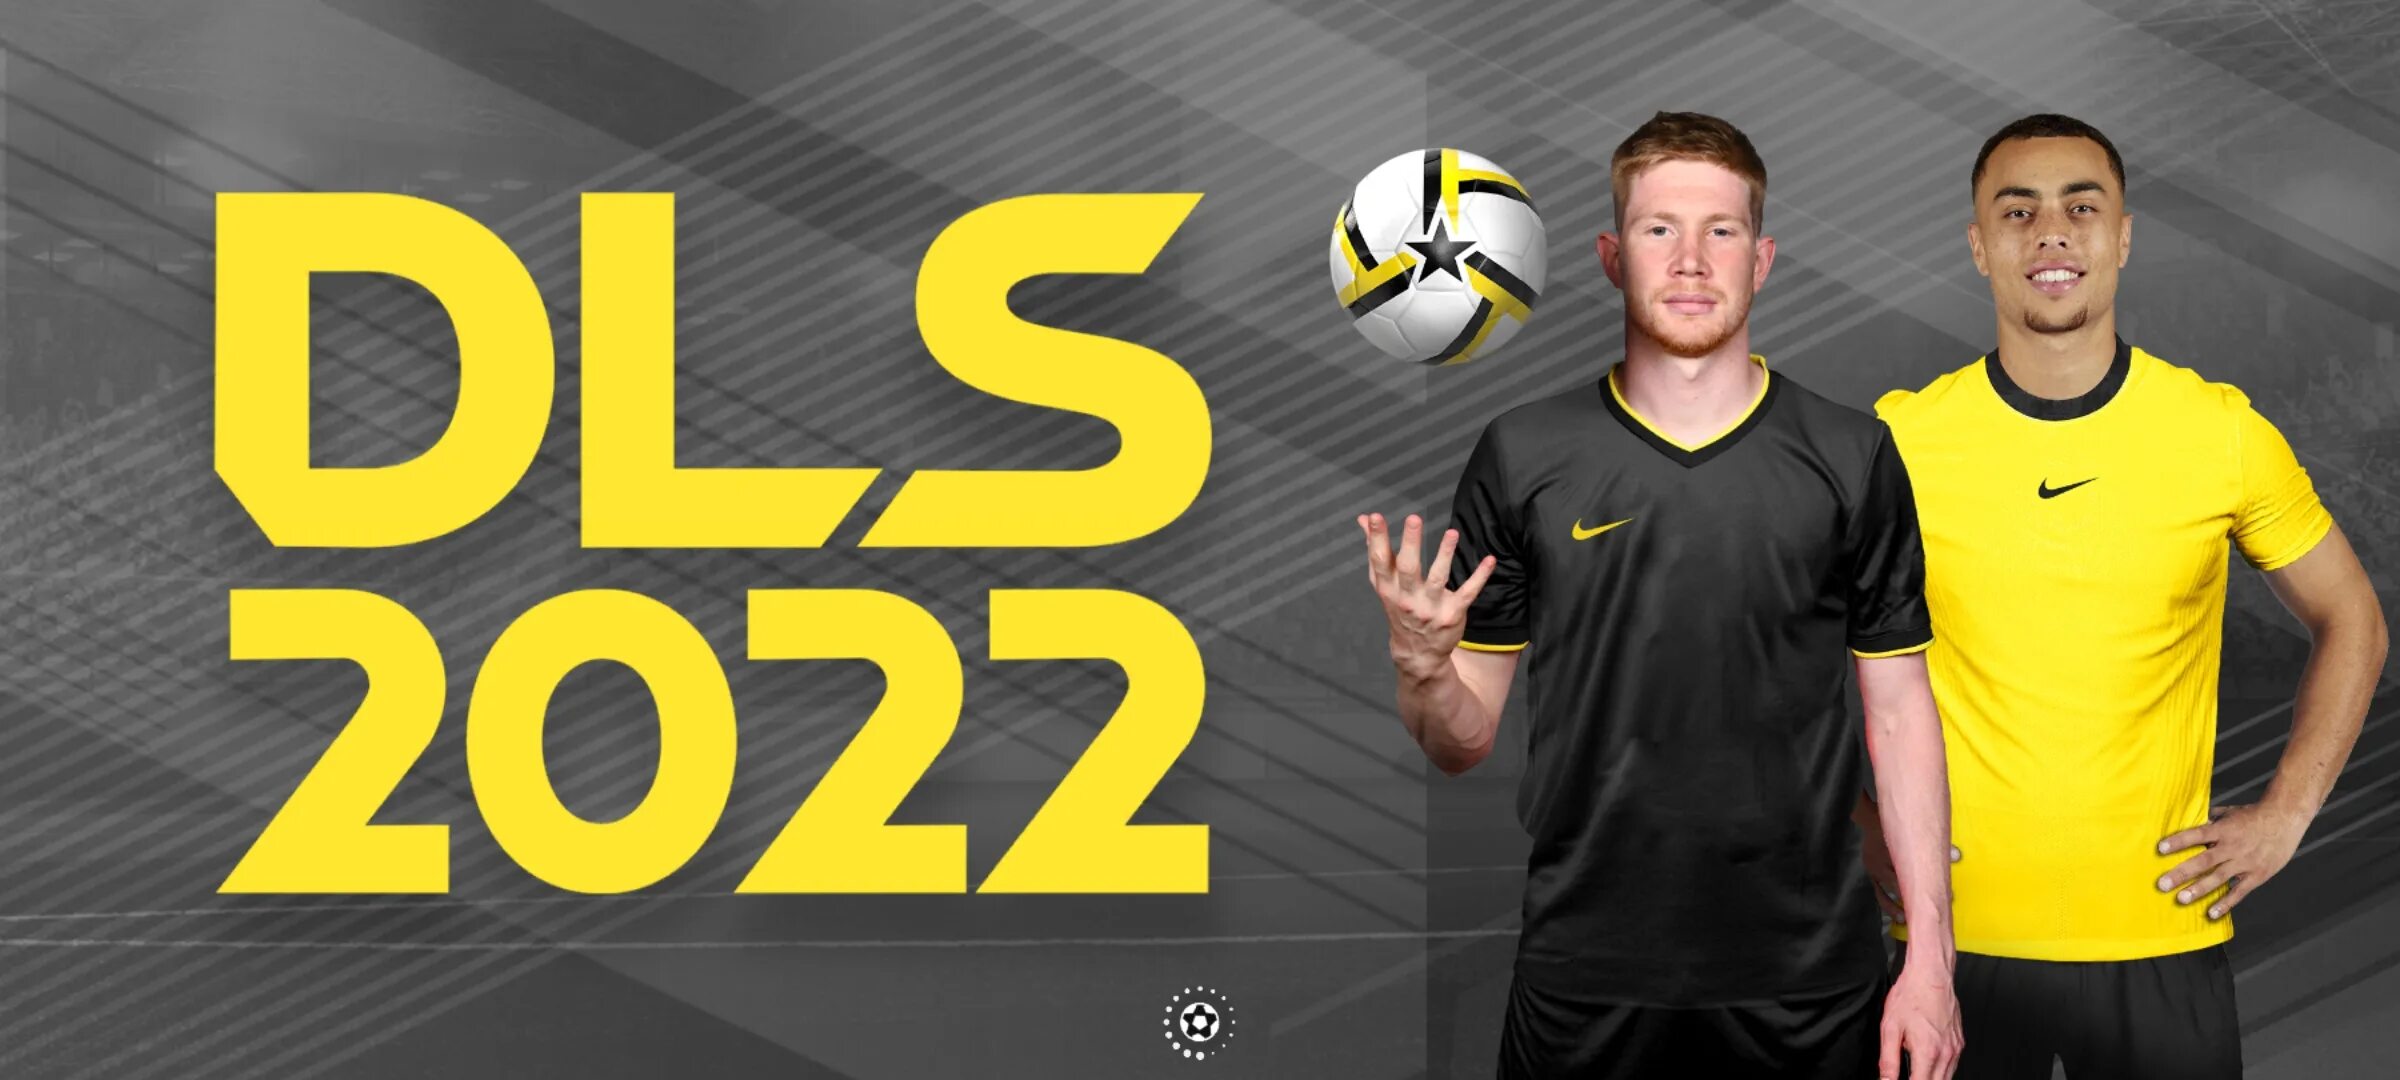 Dream Liga 2022. DLS 2022. Dls22 футбол.